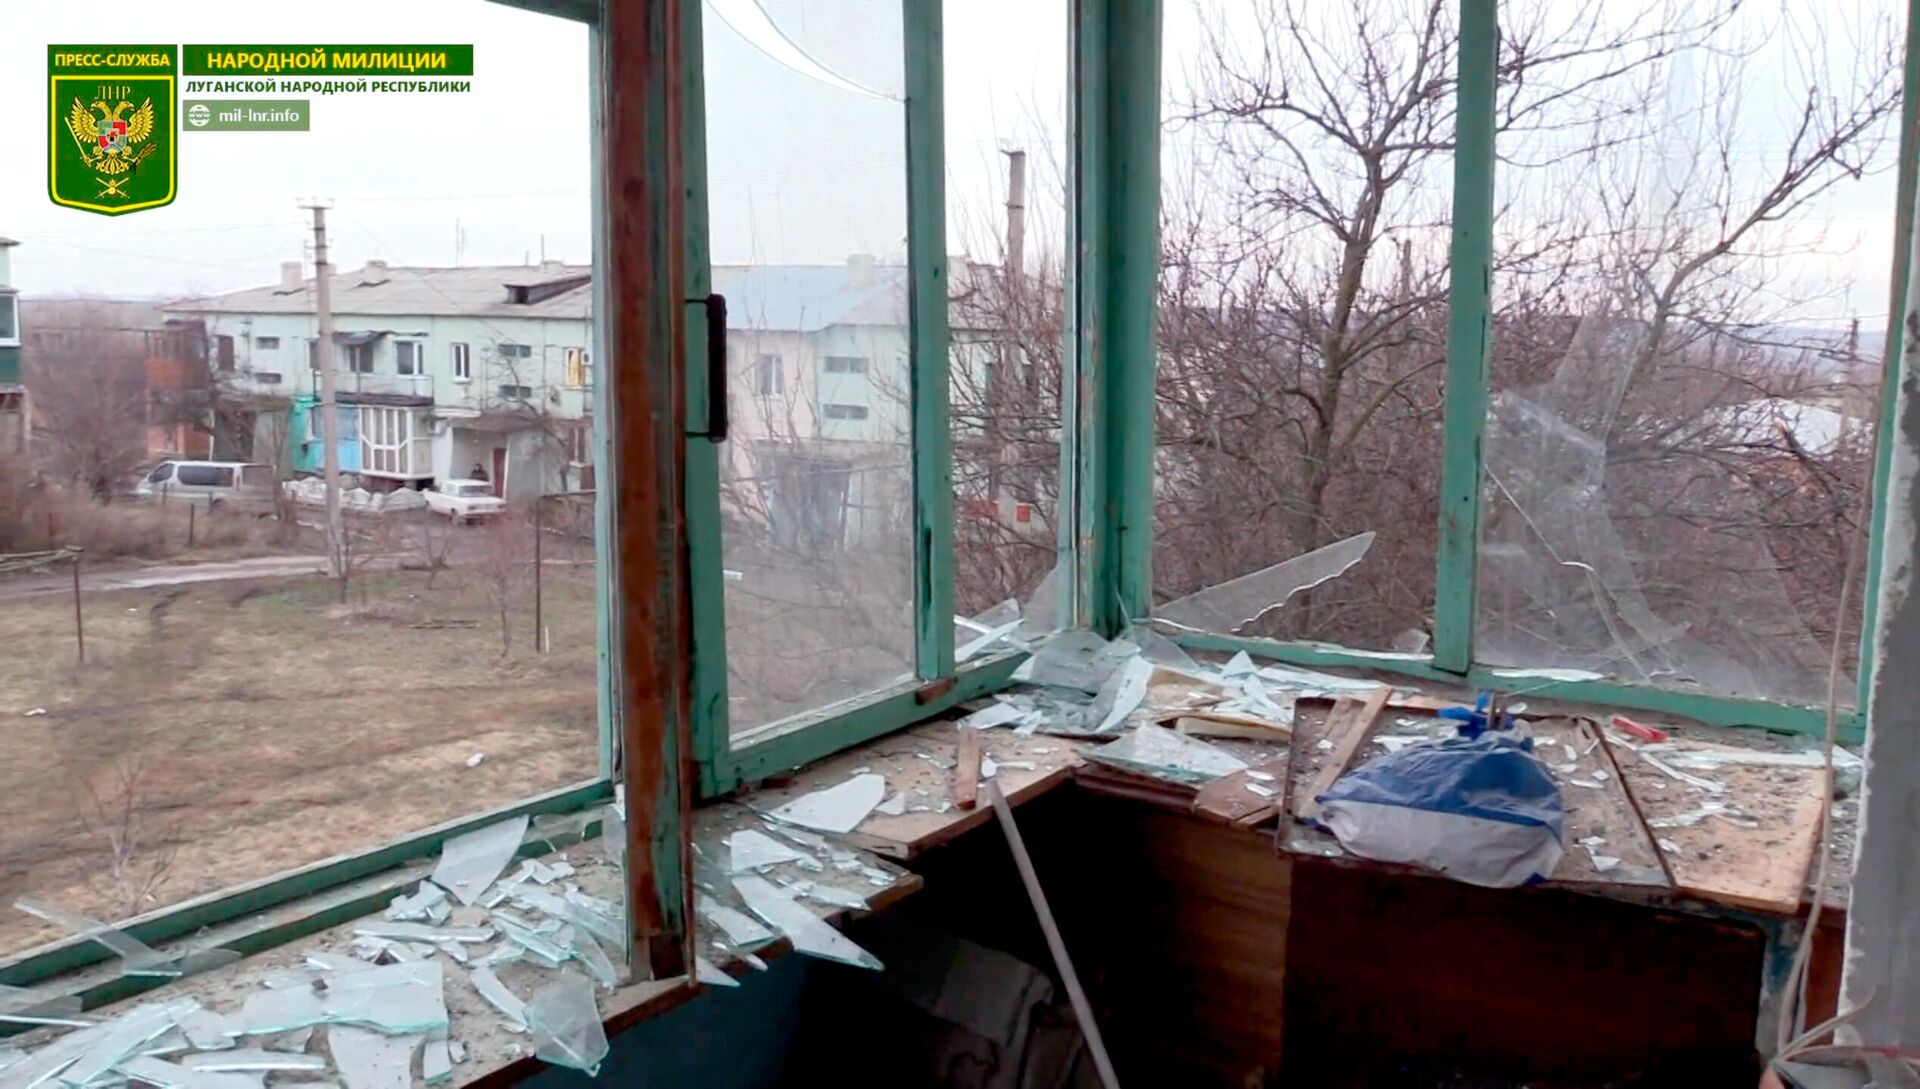 Последствия обстрела поселка Николаевка со стороны ВСУ, 17 февраля 2022 года  - Sputnik Латвия, 1920, 18.02.2022